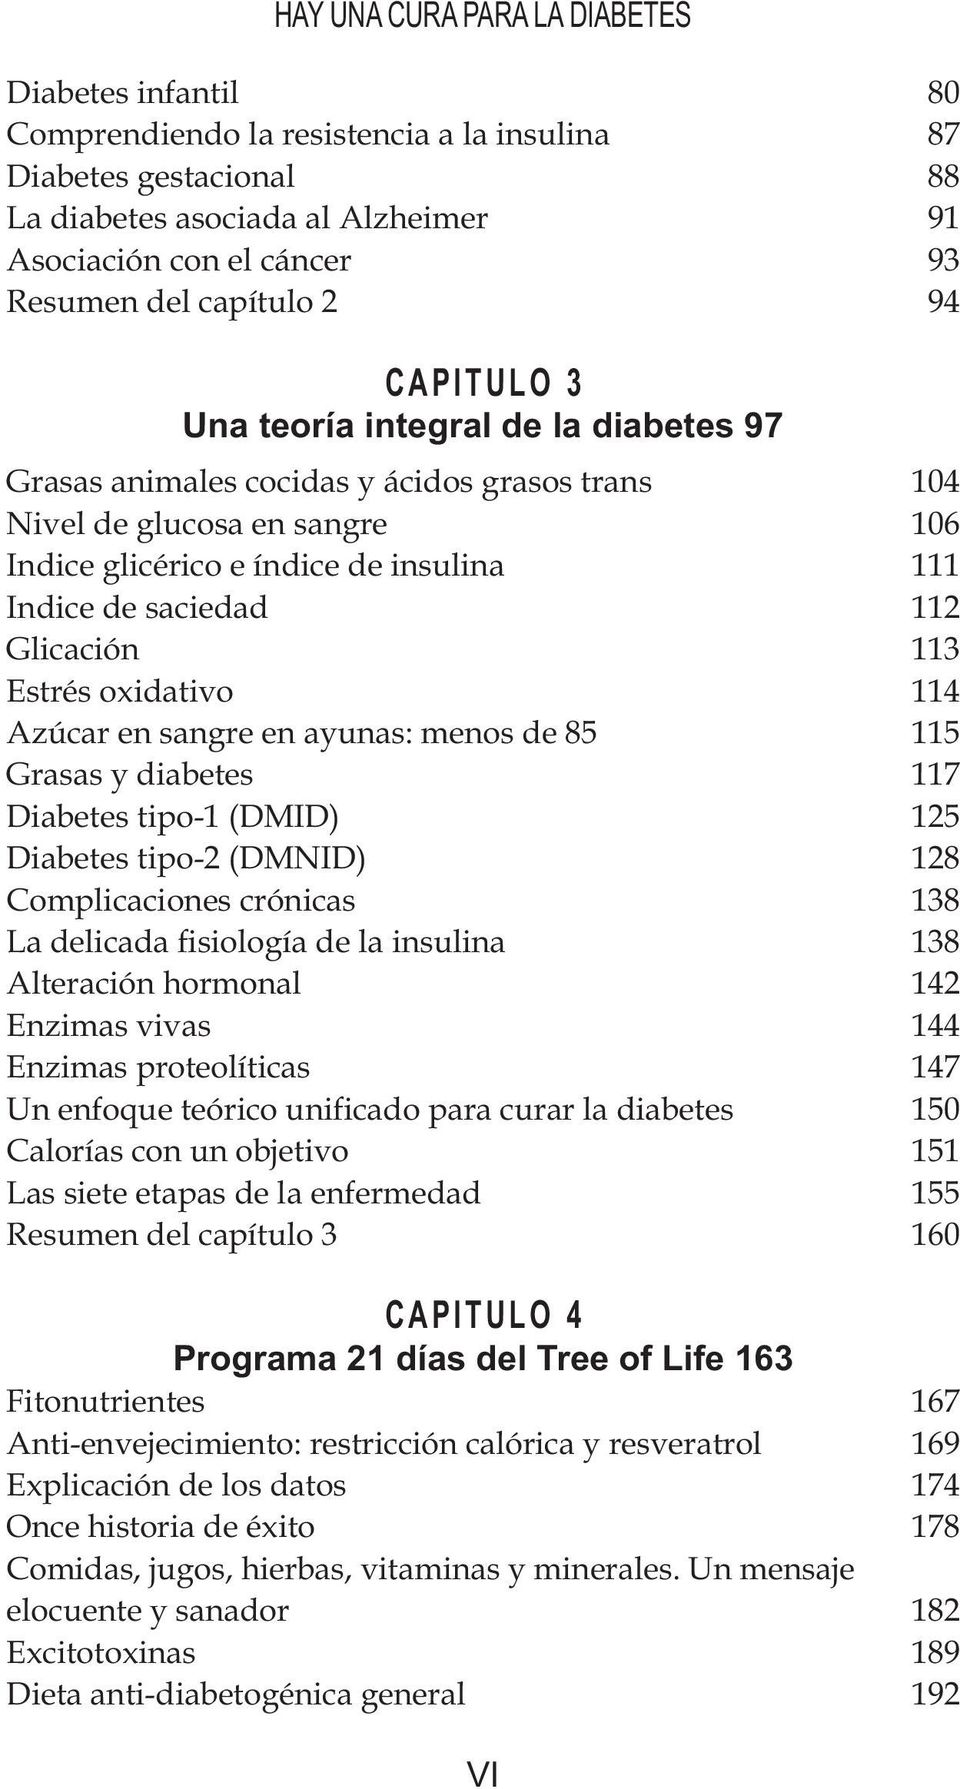 saciedad 112 Glicación 113 Estrés oxidativo 114 Azúcar en sangre en ayunas: menos de 85 115 Grasas y diabetes 117 Diabetes tipo-1 (DMID) 125 Diabetes tipo-2 (DMNID) 128 Complicaciones crónicas 138 La